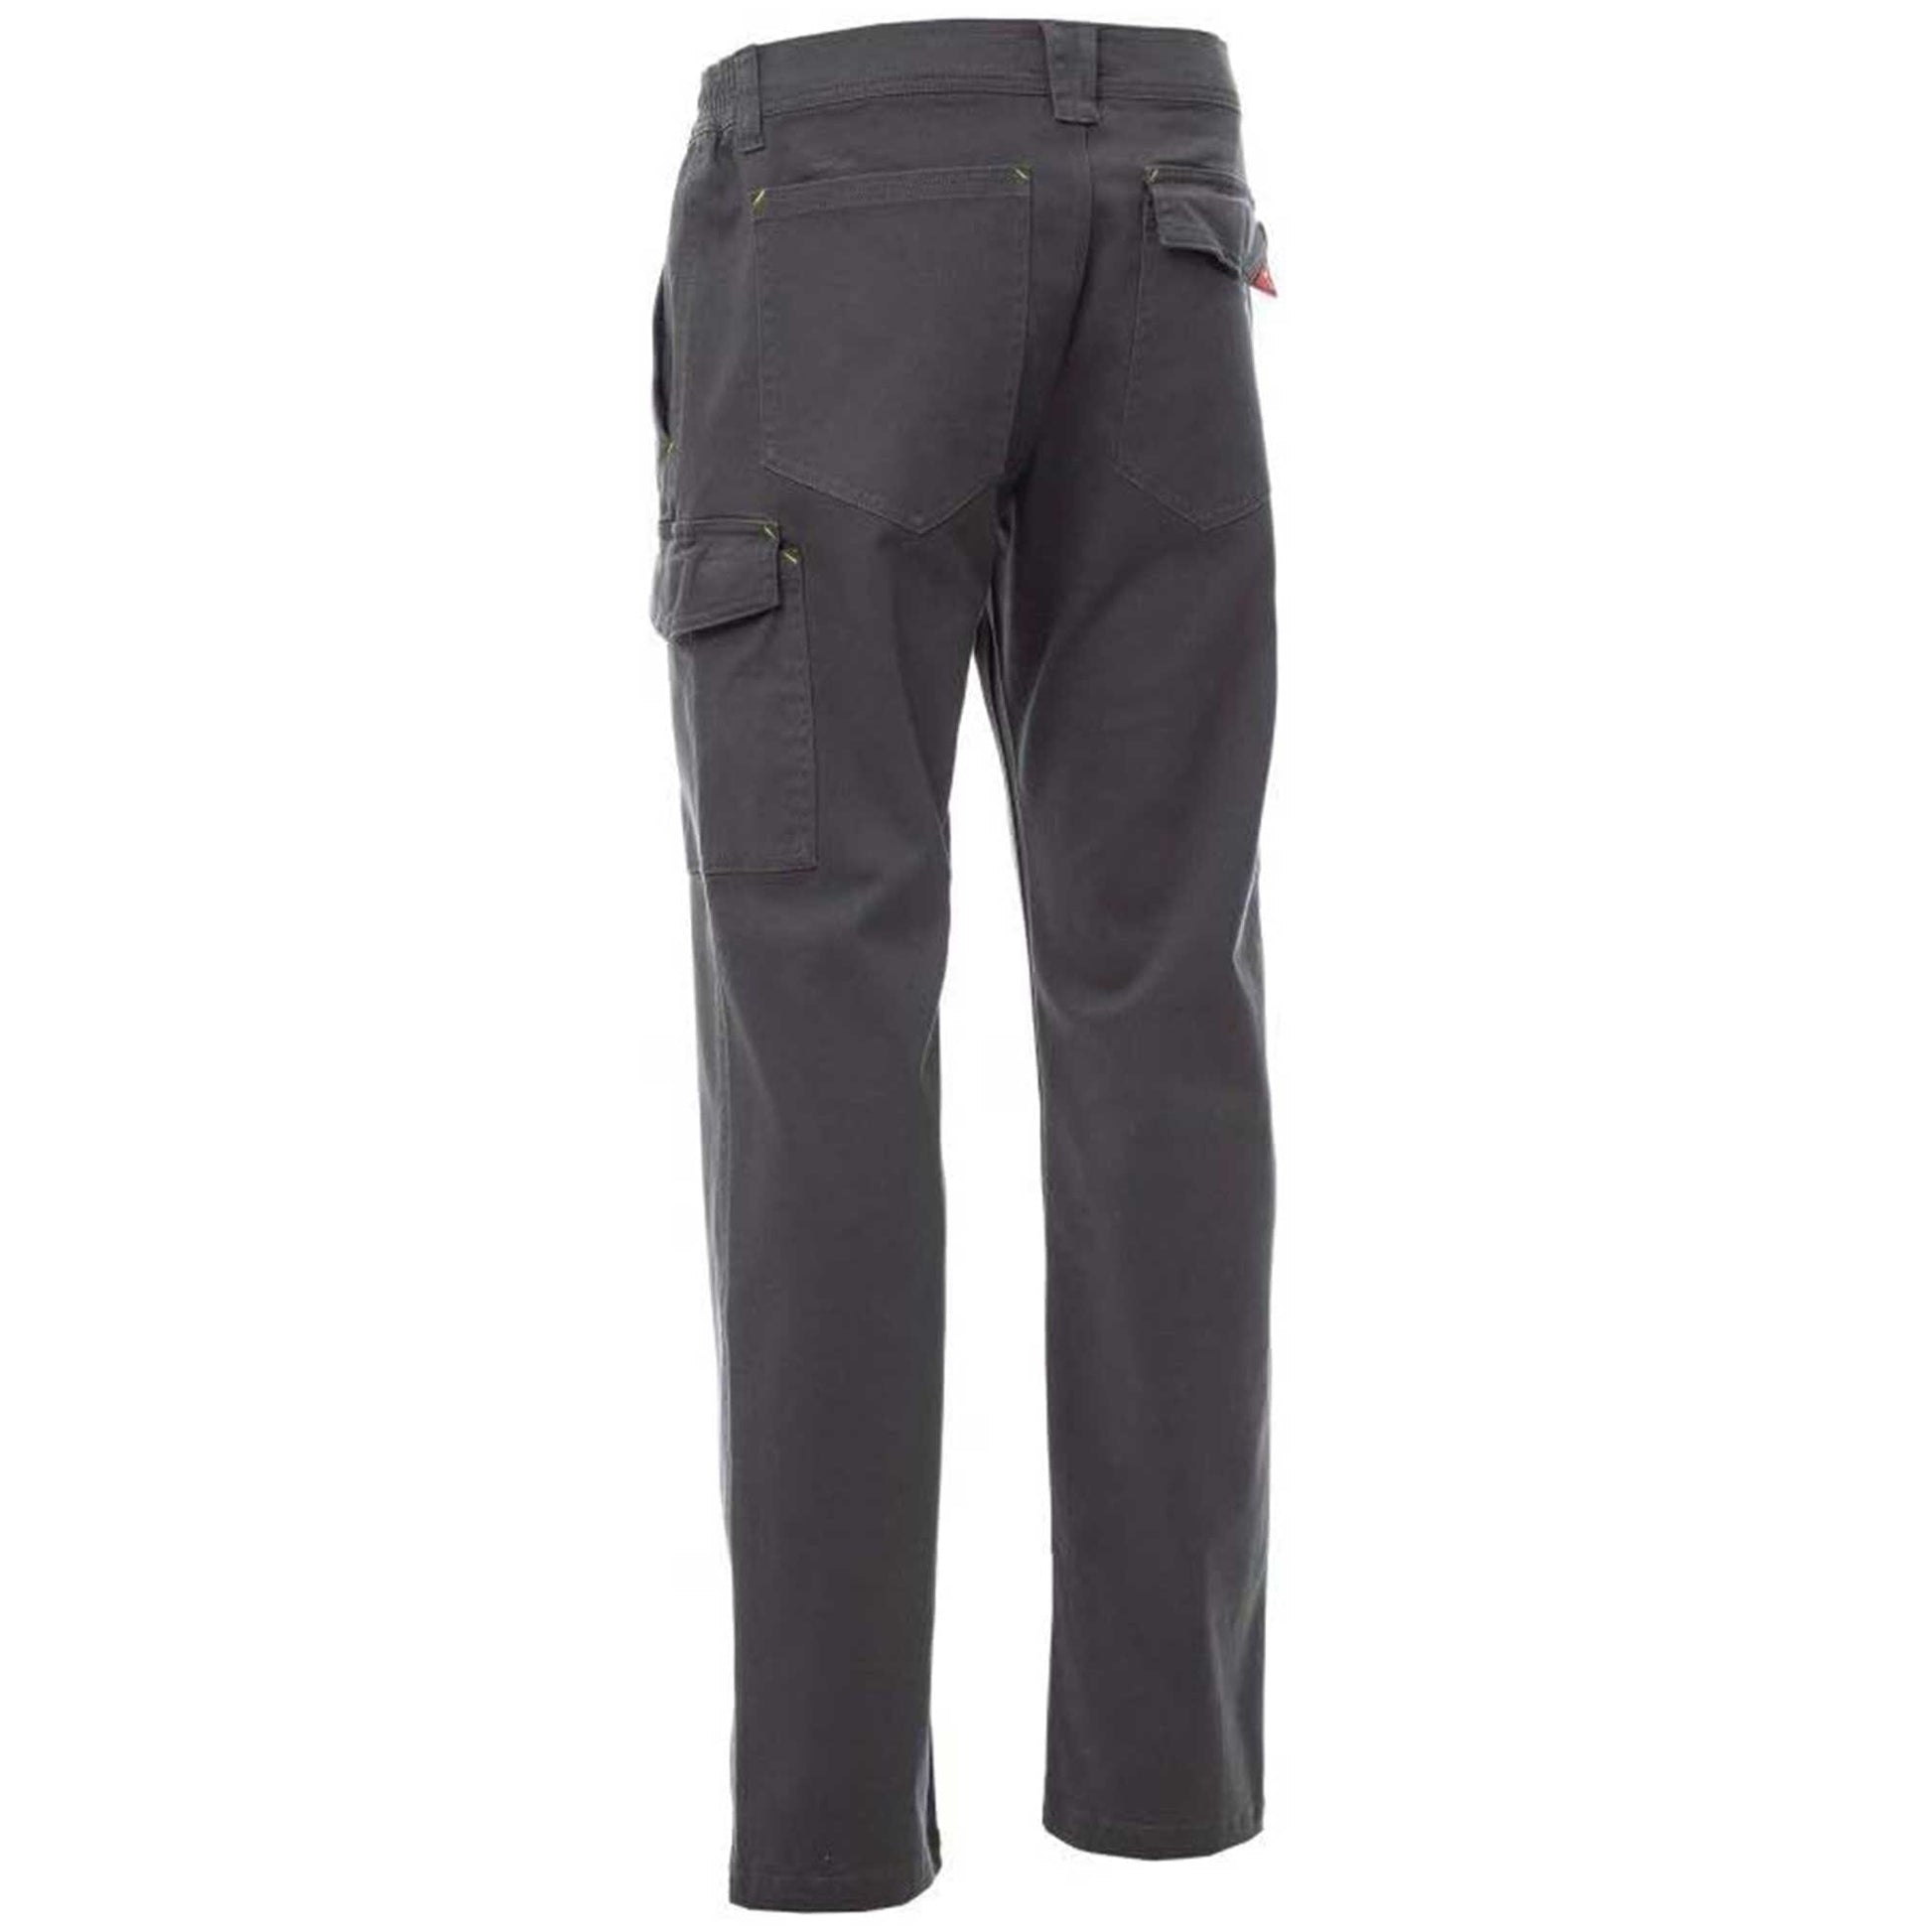 cargo 6 pocket pants for men - Sale price - Buy online in Pakistan 